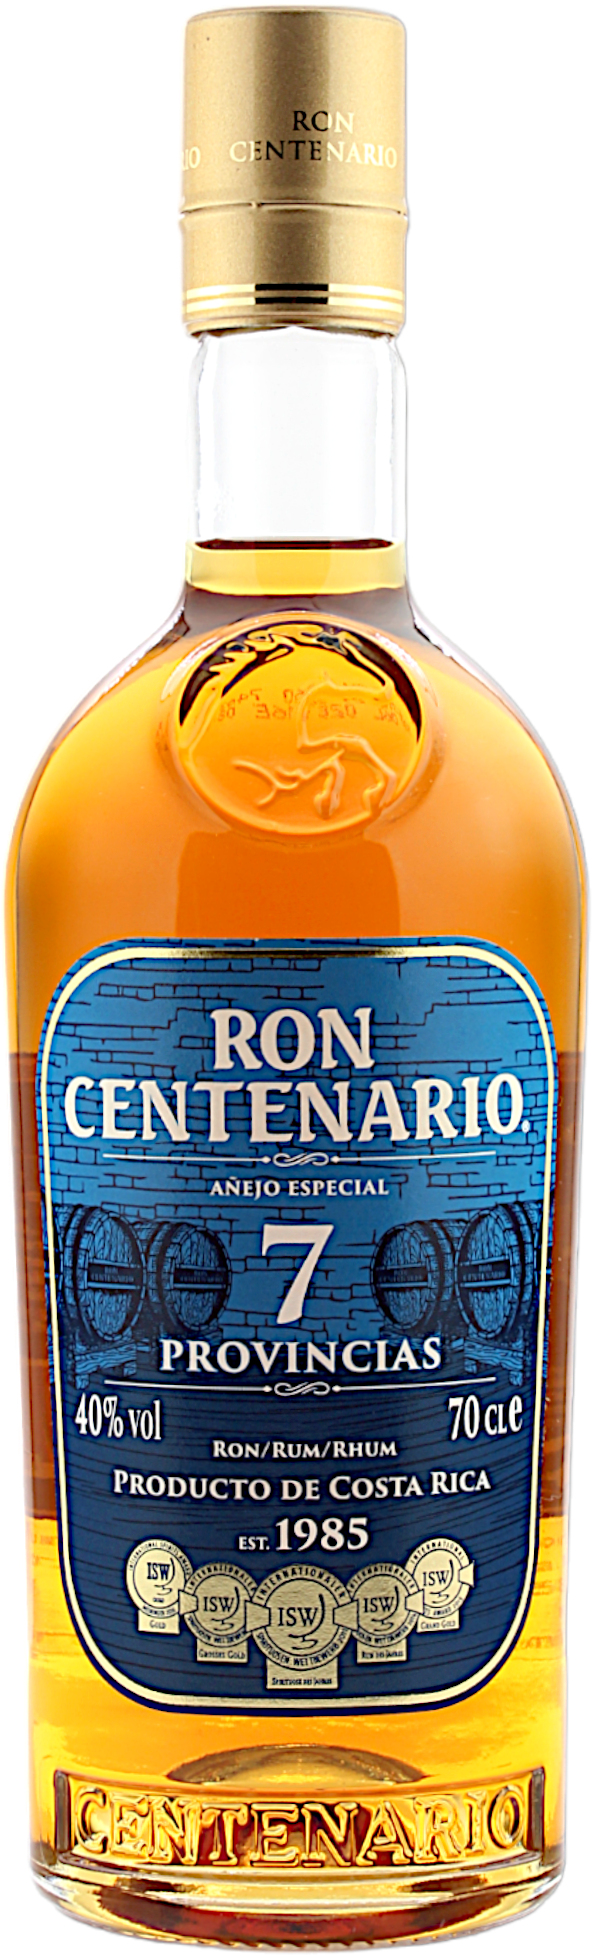 Ron Centenario Provincias 7 Anejo Especial 40.0% 0,7l